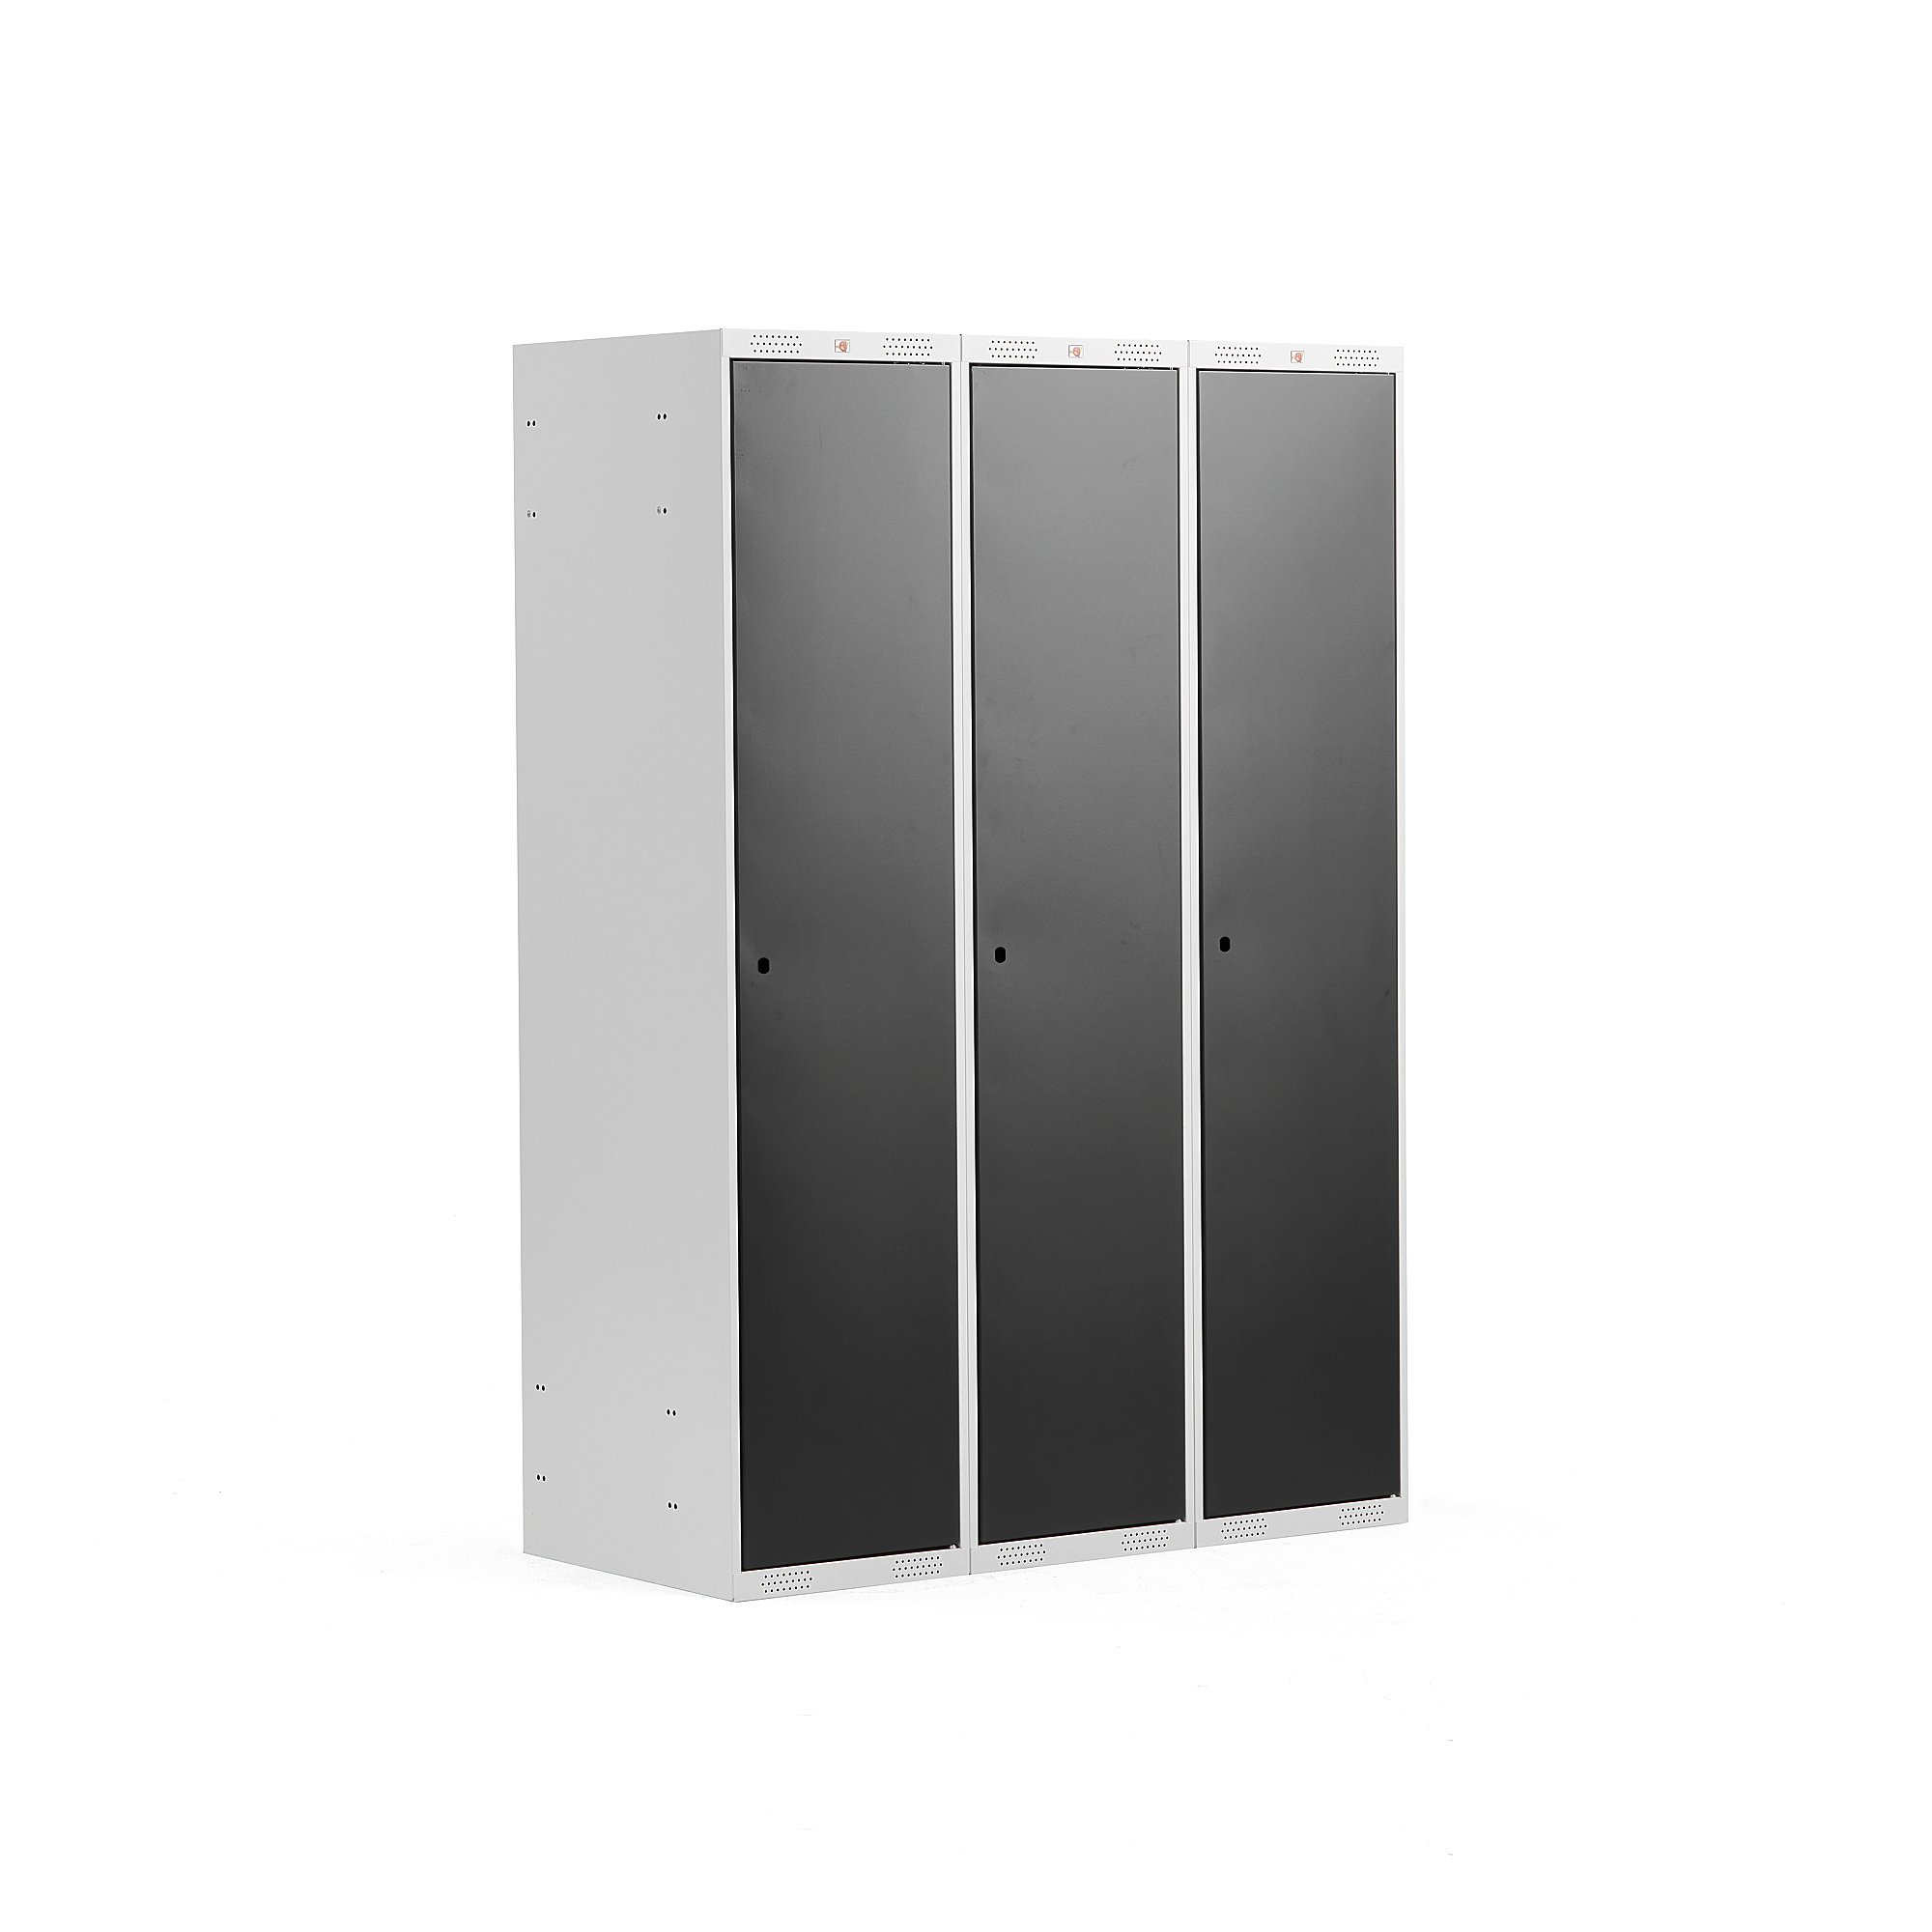 Šatní skříňka CLASSIC, 3 sekce, 1740x1200x550 mm, šedá, černé dveře